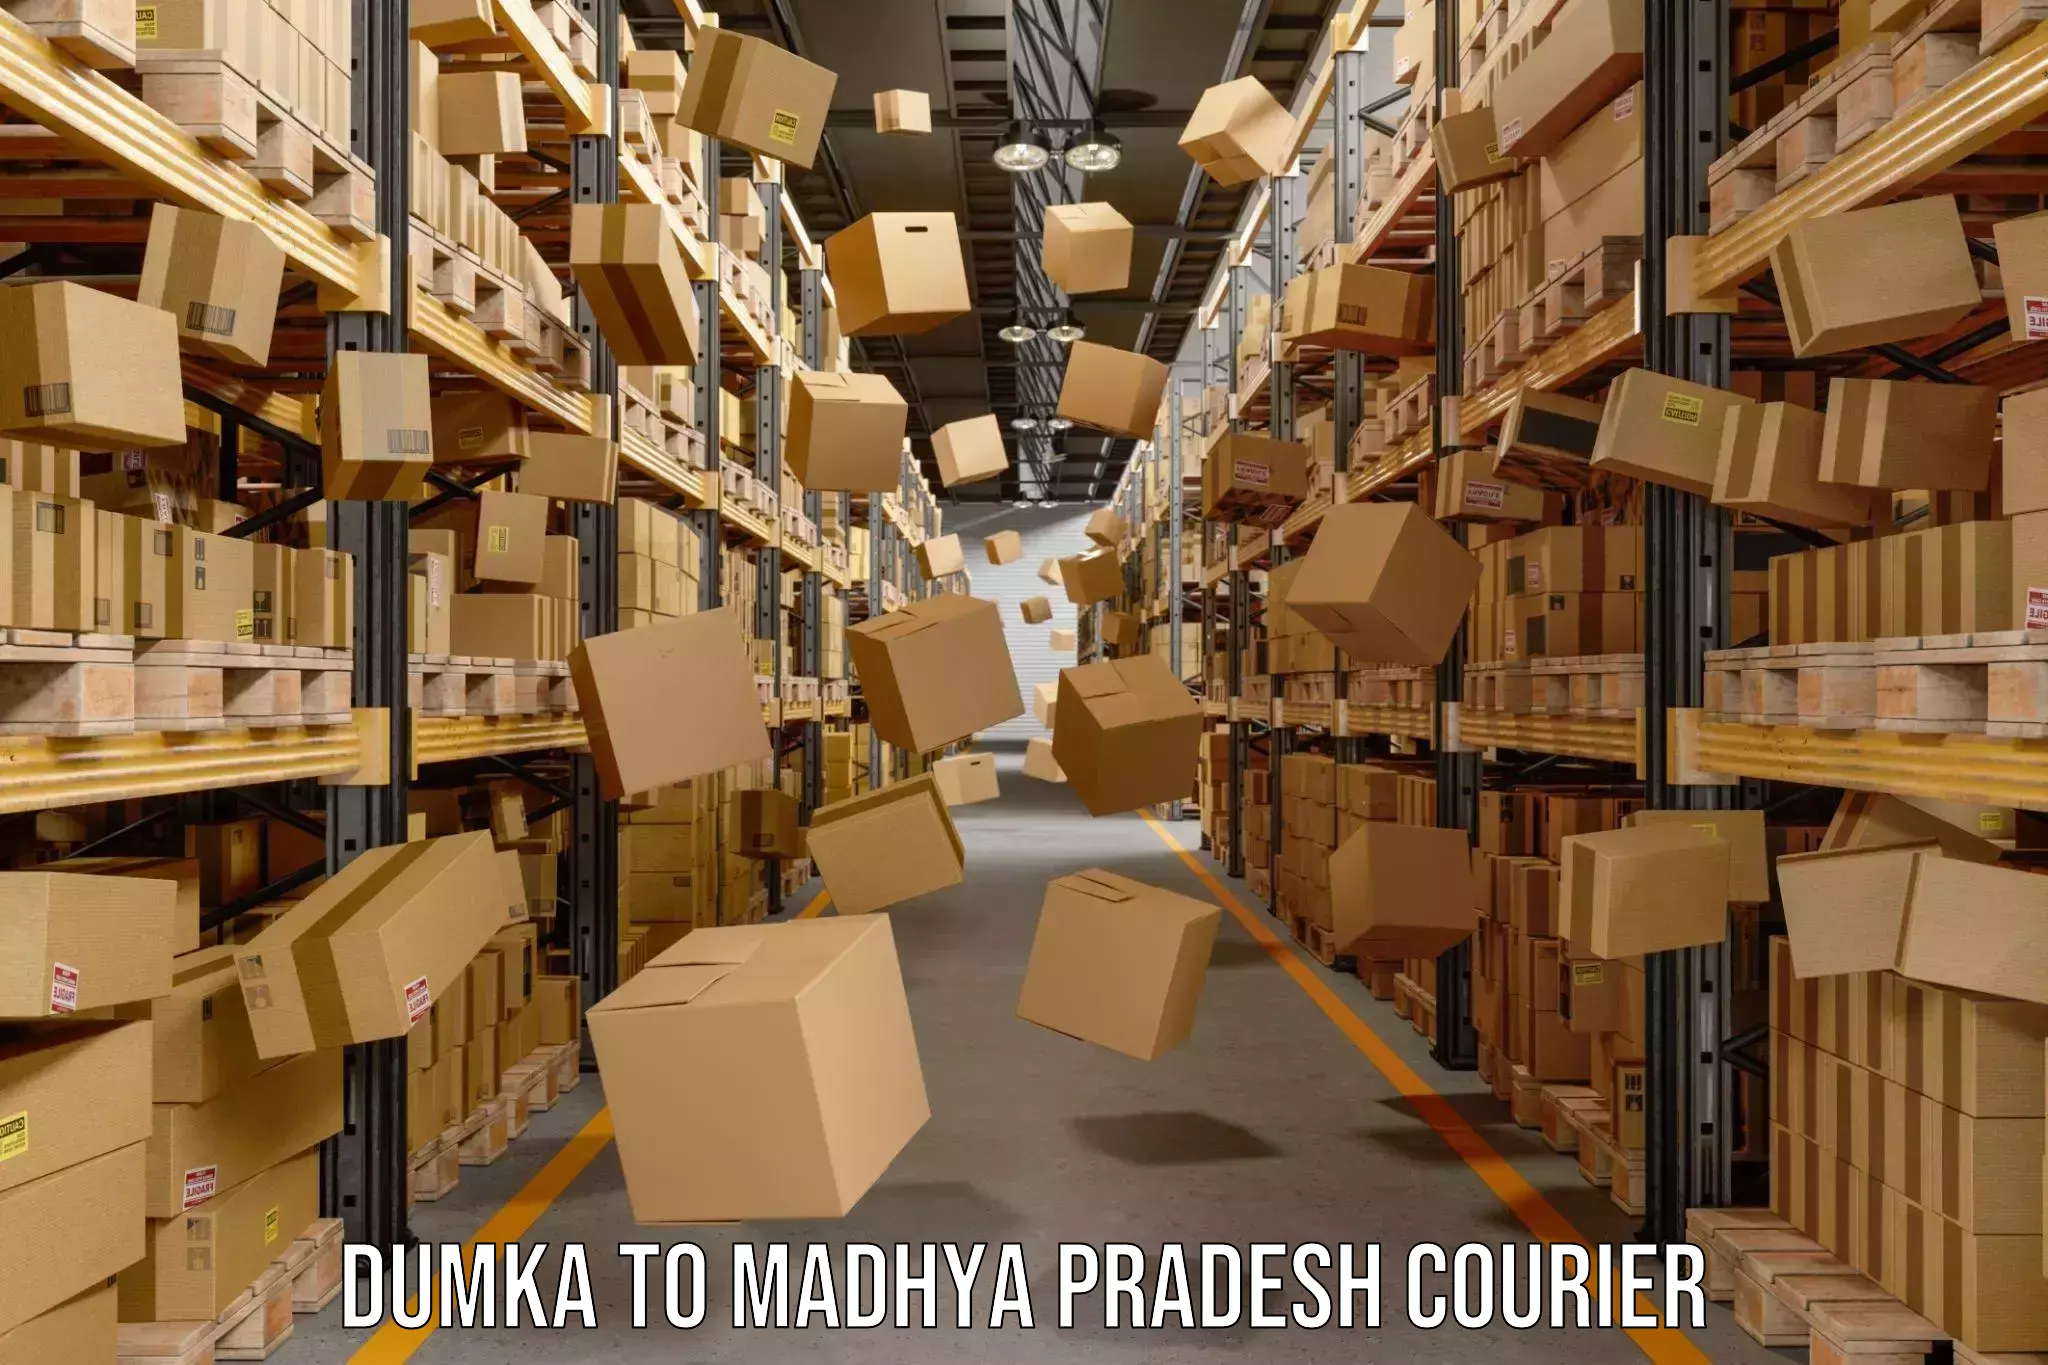 User-friendly courier app Dumka to Ratlam